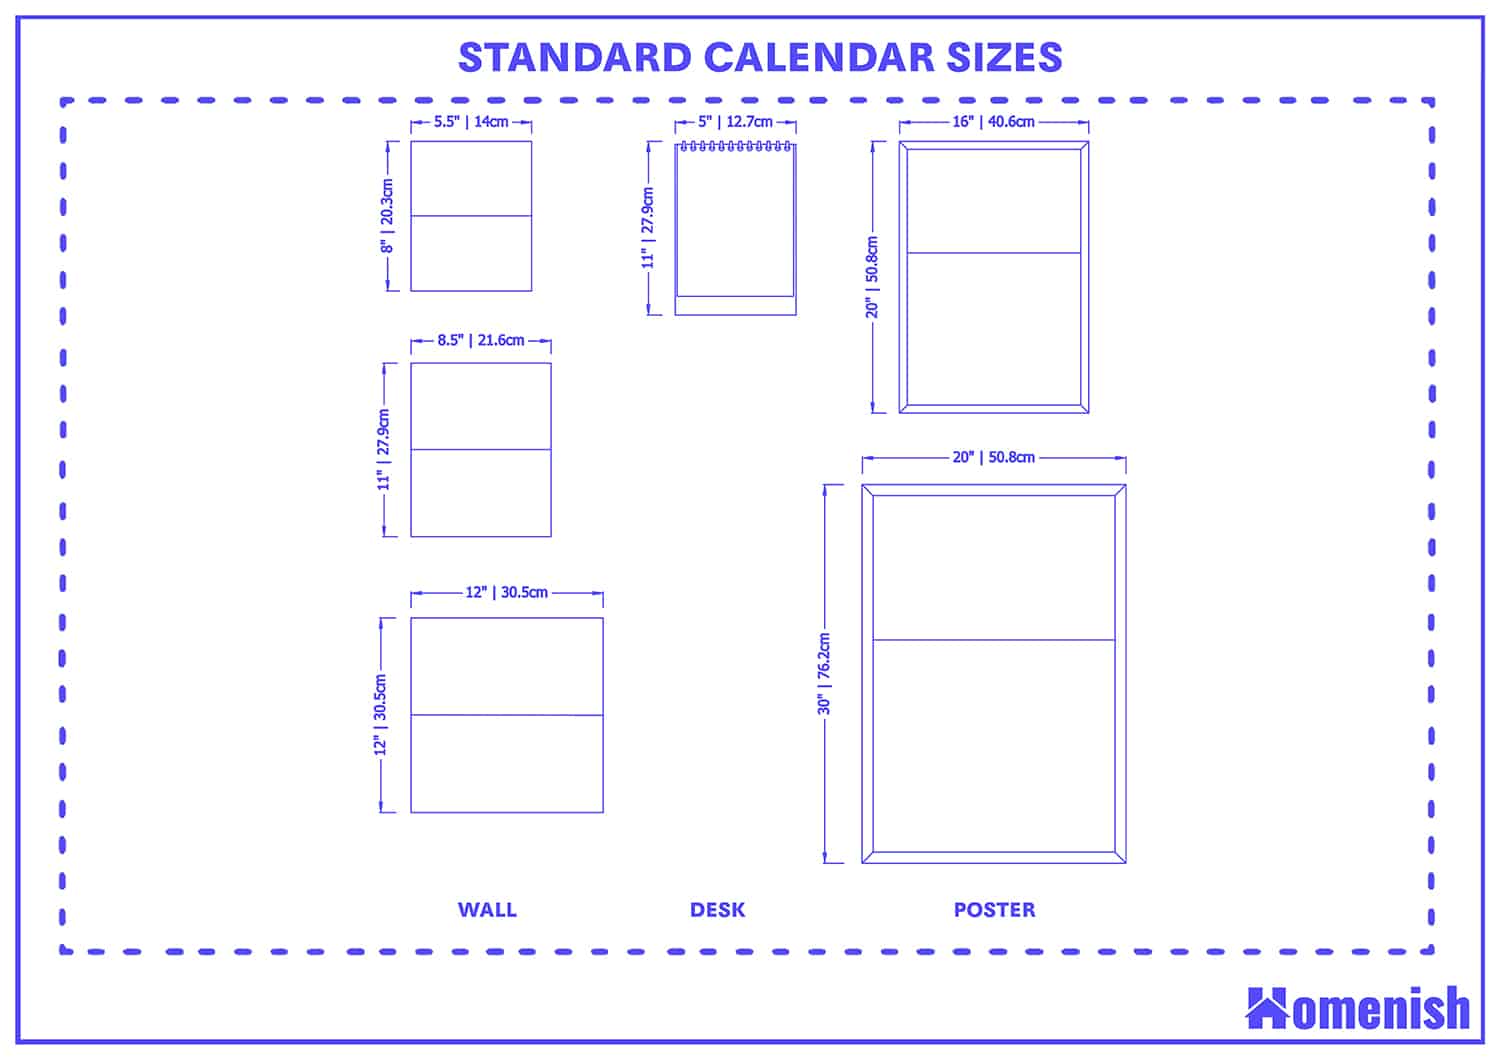 Standard calendar sizes